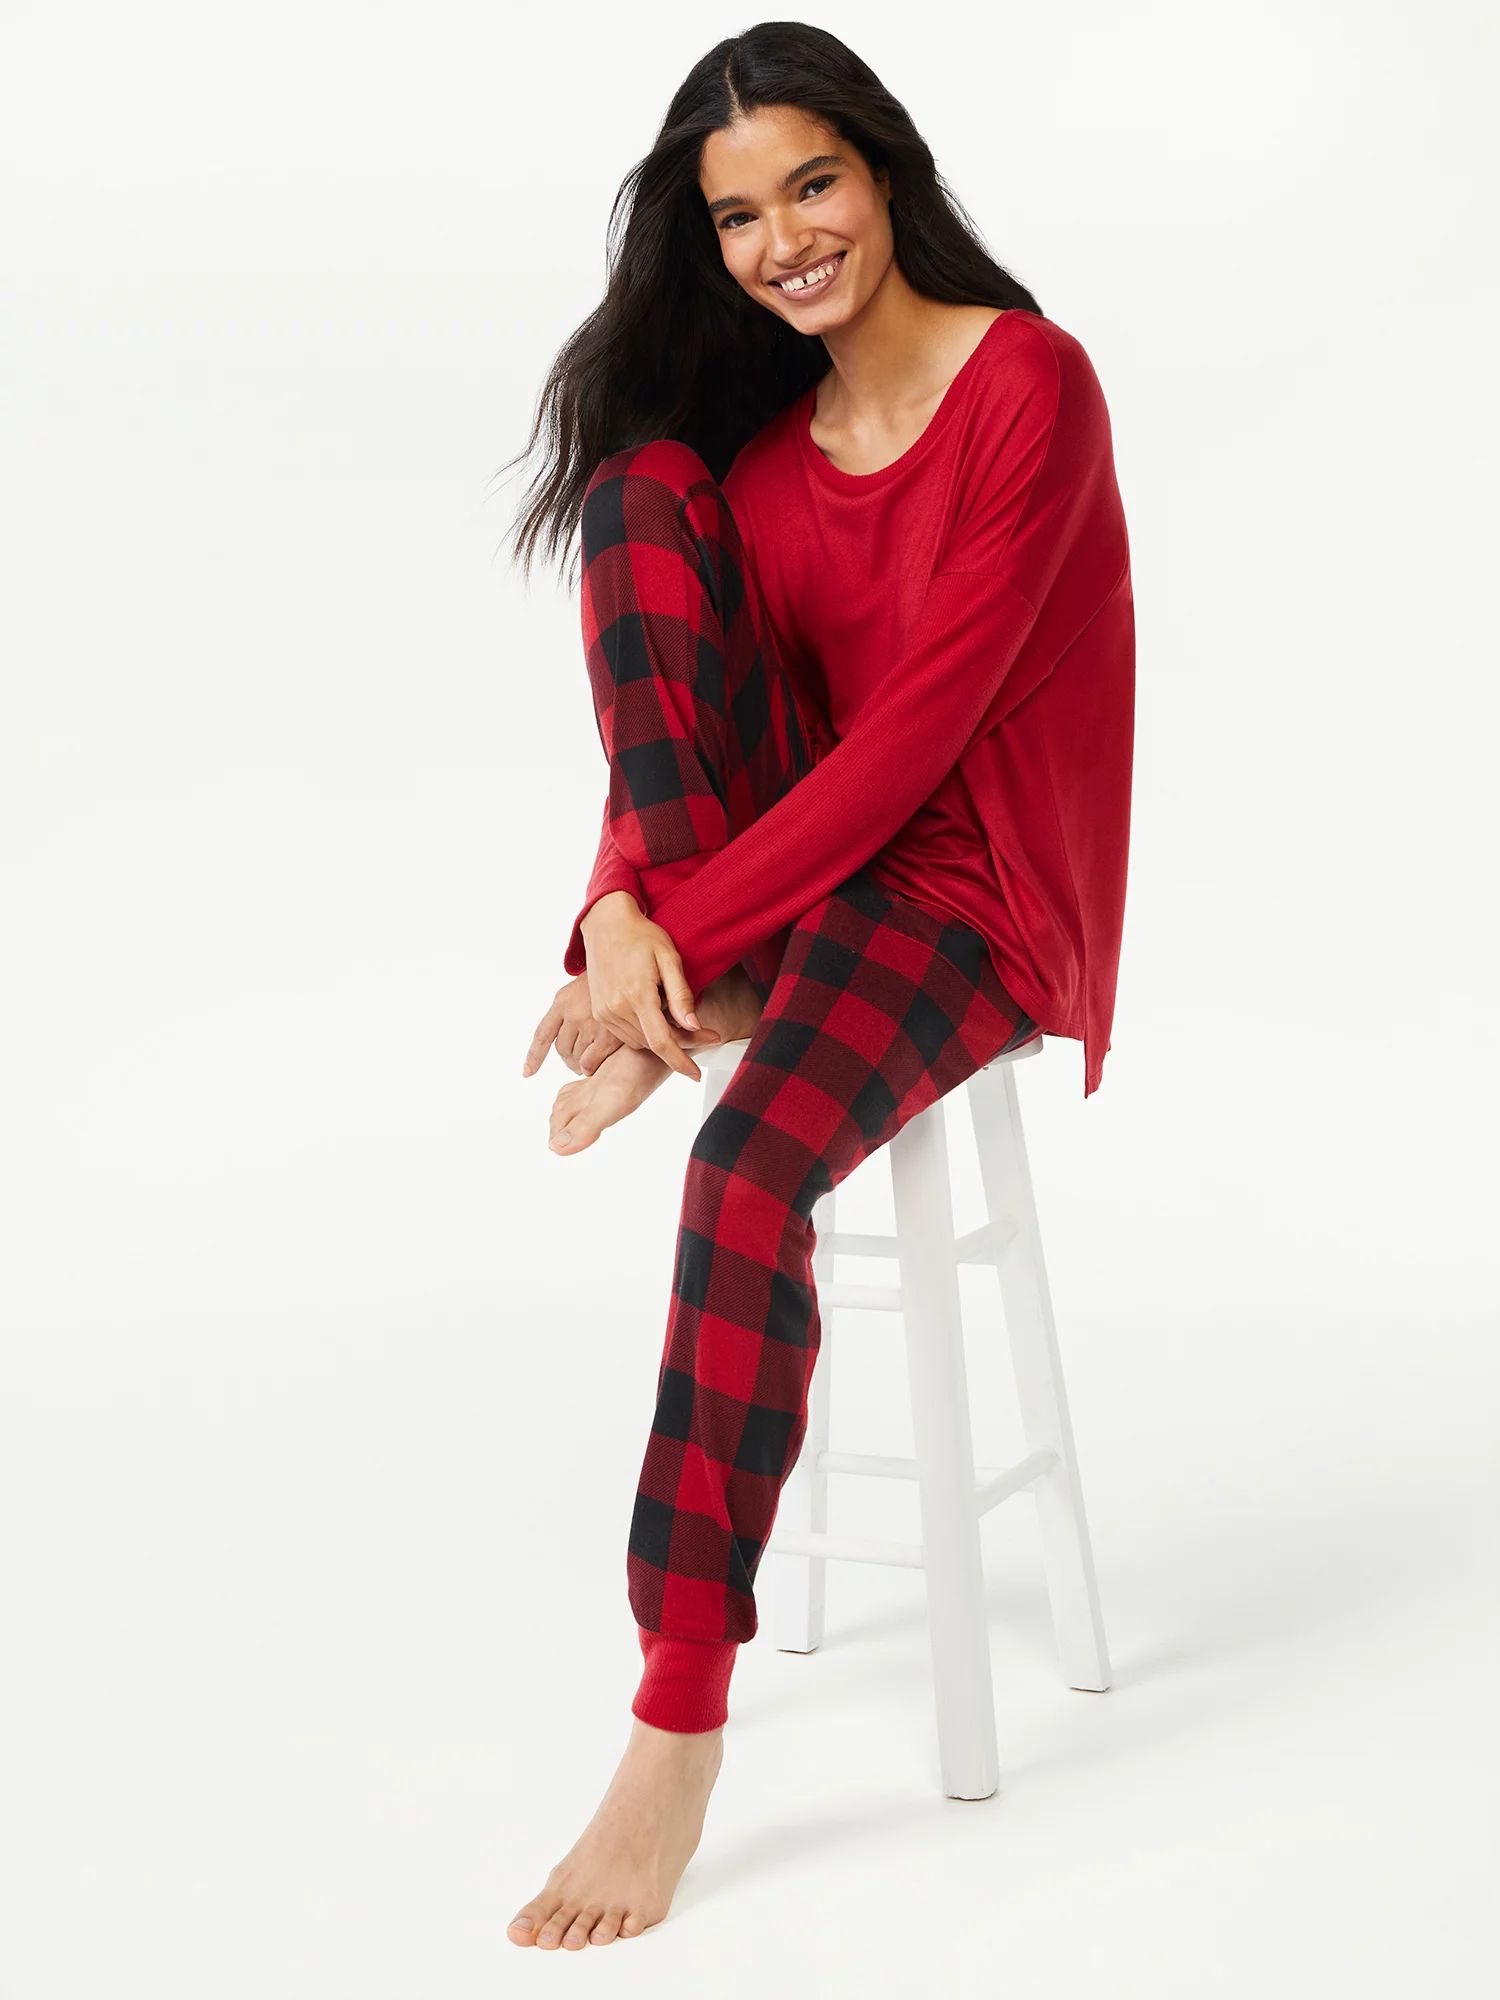 Joyspun Women's Long Sleeve Top and Jogger Pajama Set, 2-Piece, Sizes up to 3X - Walmart.com | Walmart (US)